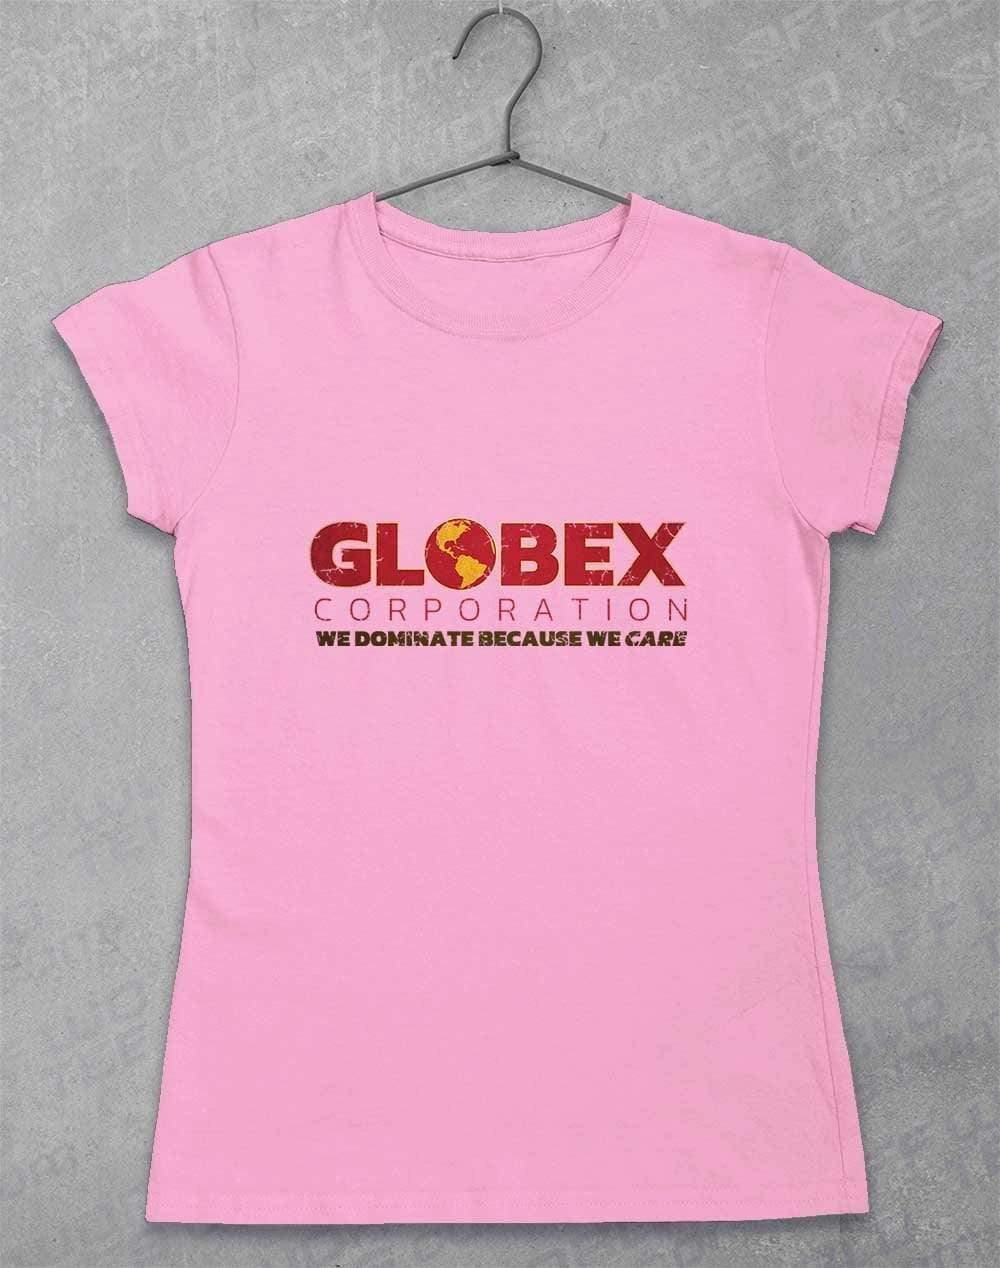 Globex Corporation Womens T-Shirt 8-10 / Light Pink  - Off World Tees